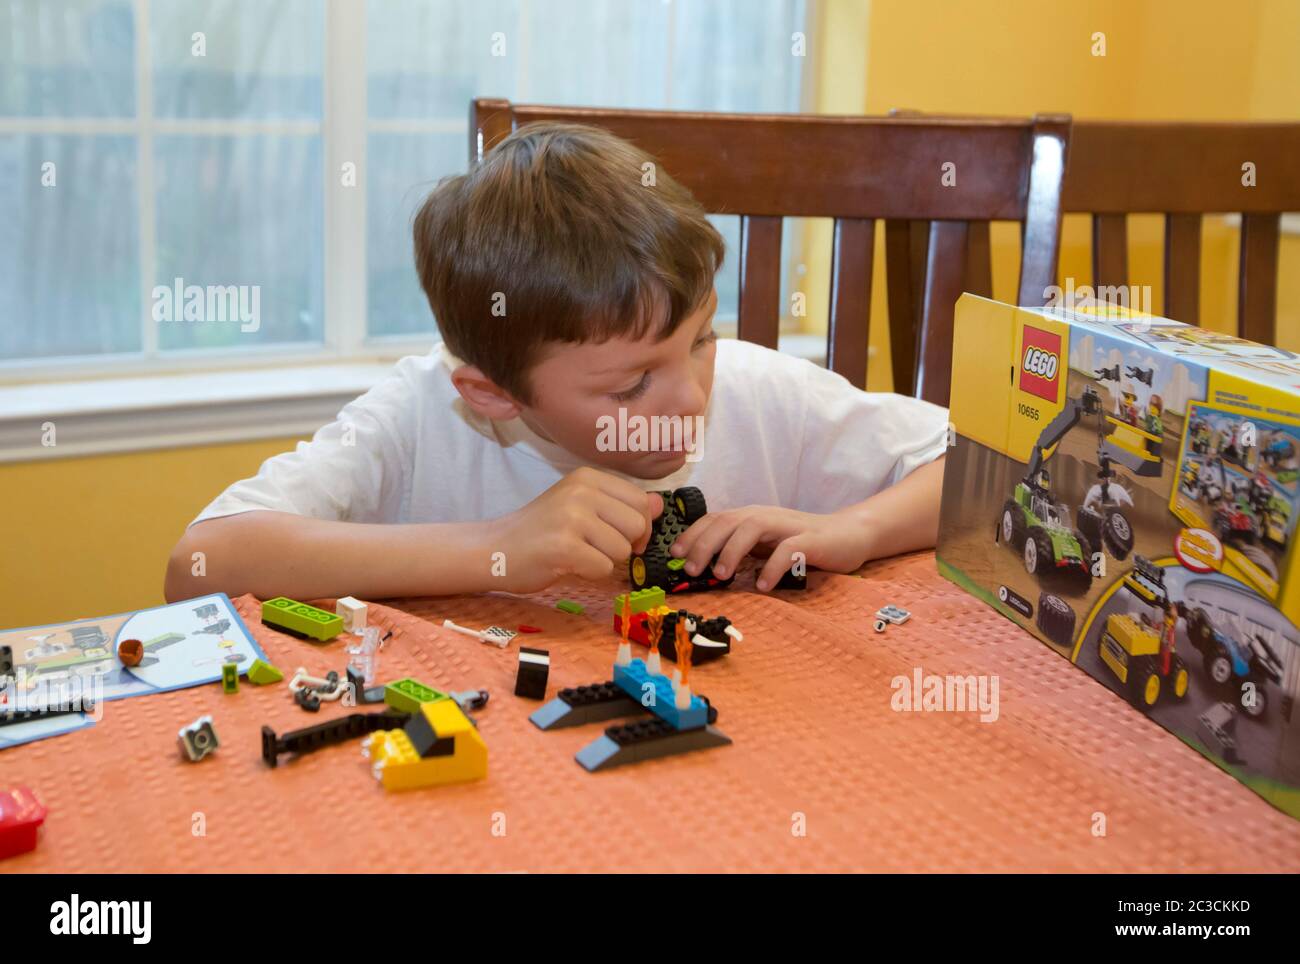 Austin Texas, USA, 2013: Ein siebenjähriger mexikanisch-amerikanischer Junge findet heraus, wie man zu Hause Legos-Bausteine zusammenstellt. ©Marjorie Kamys Cotera/Daemmrich Photography Stockfoto